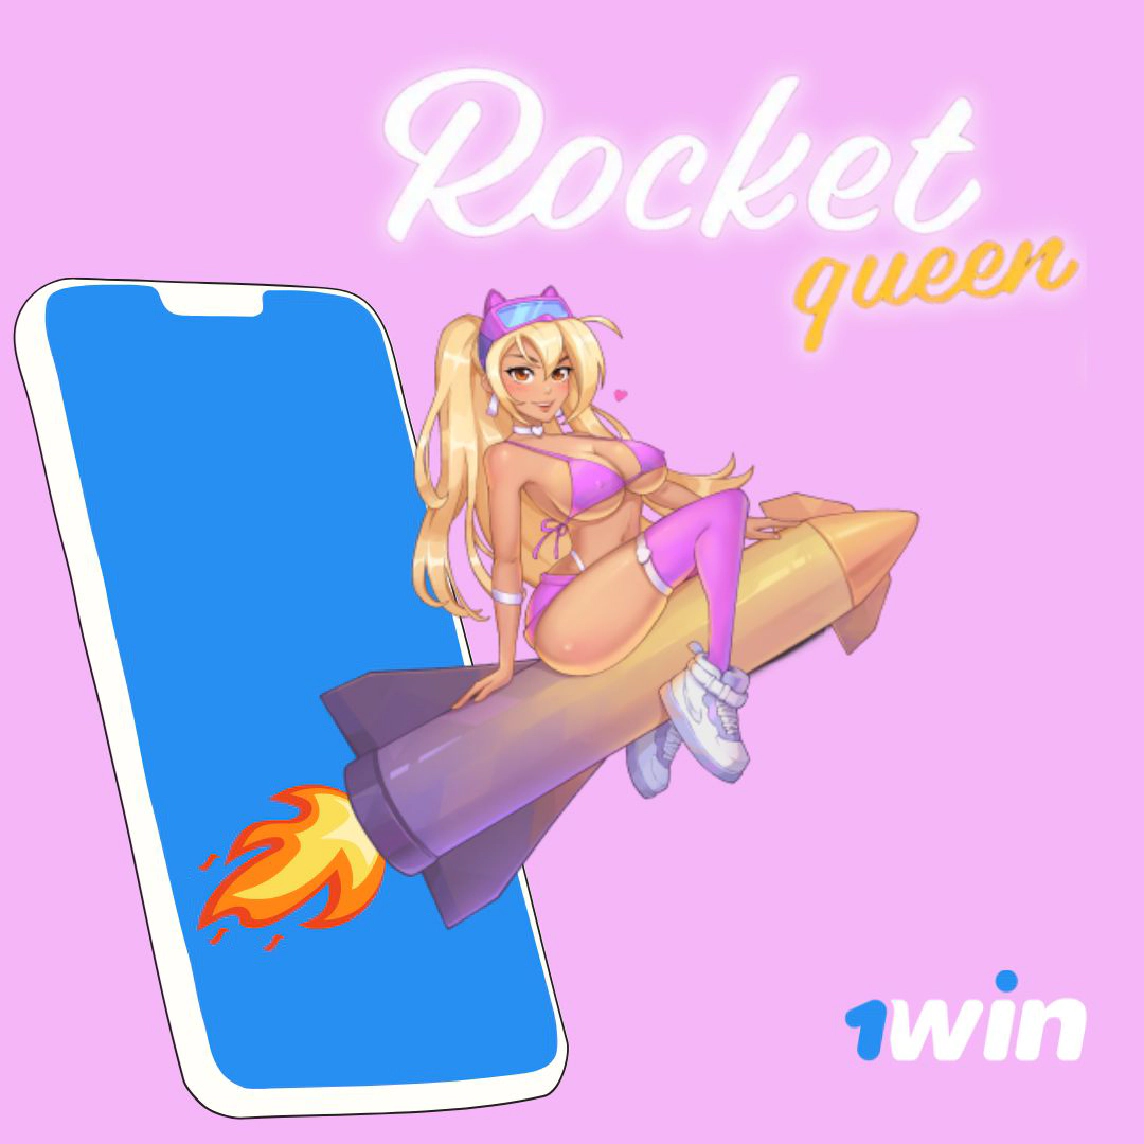 Jogo no caça-níqueis Rocket Queen no cassino 1win